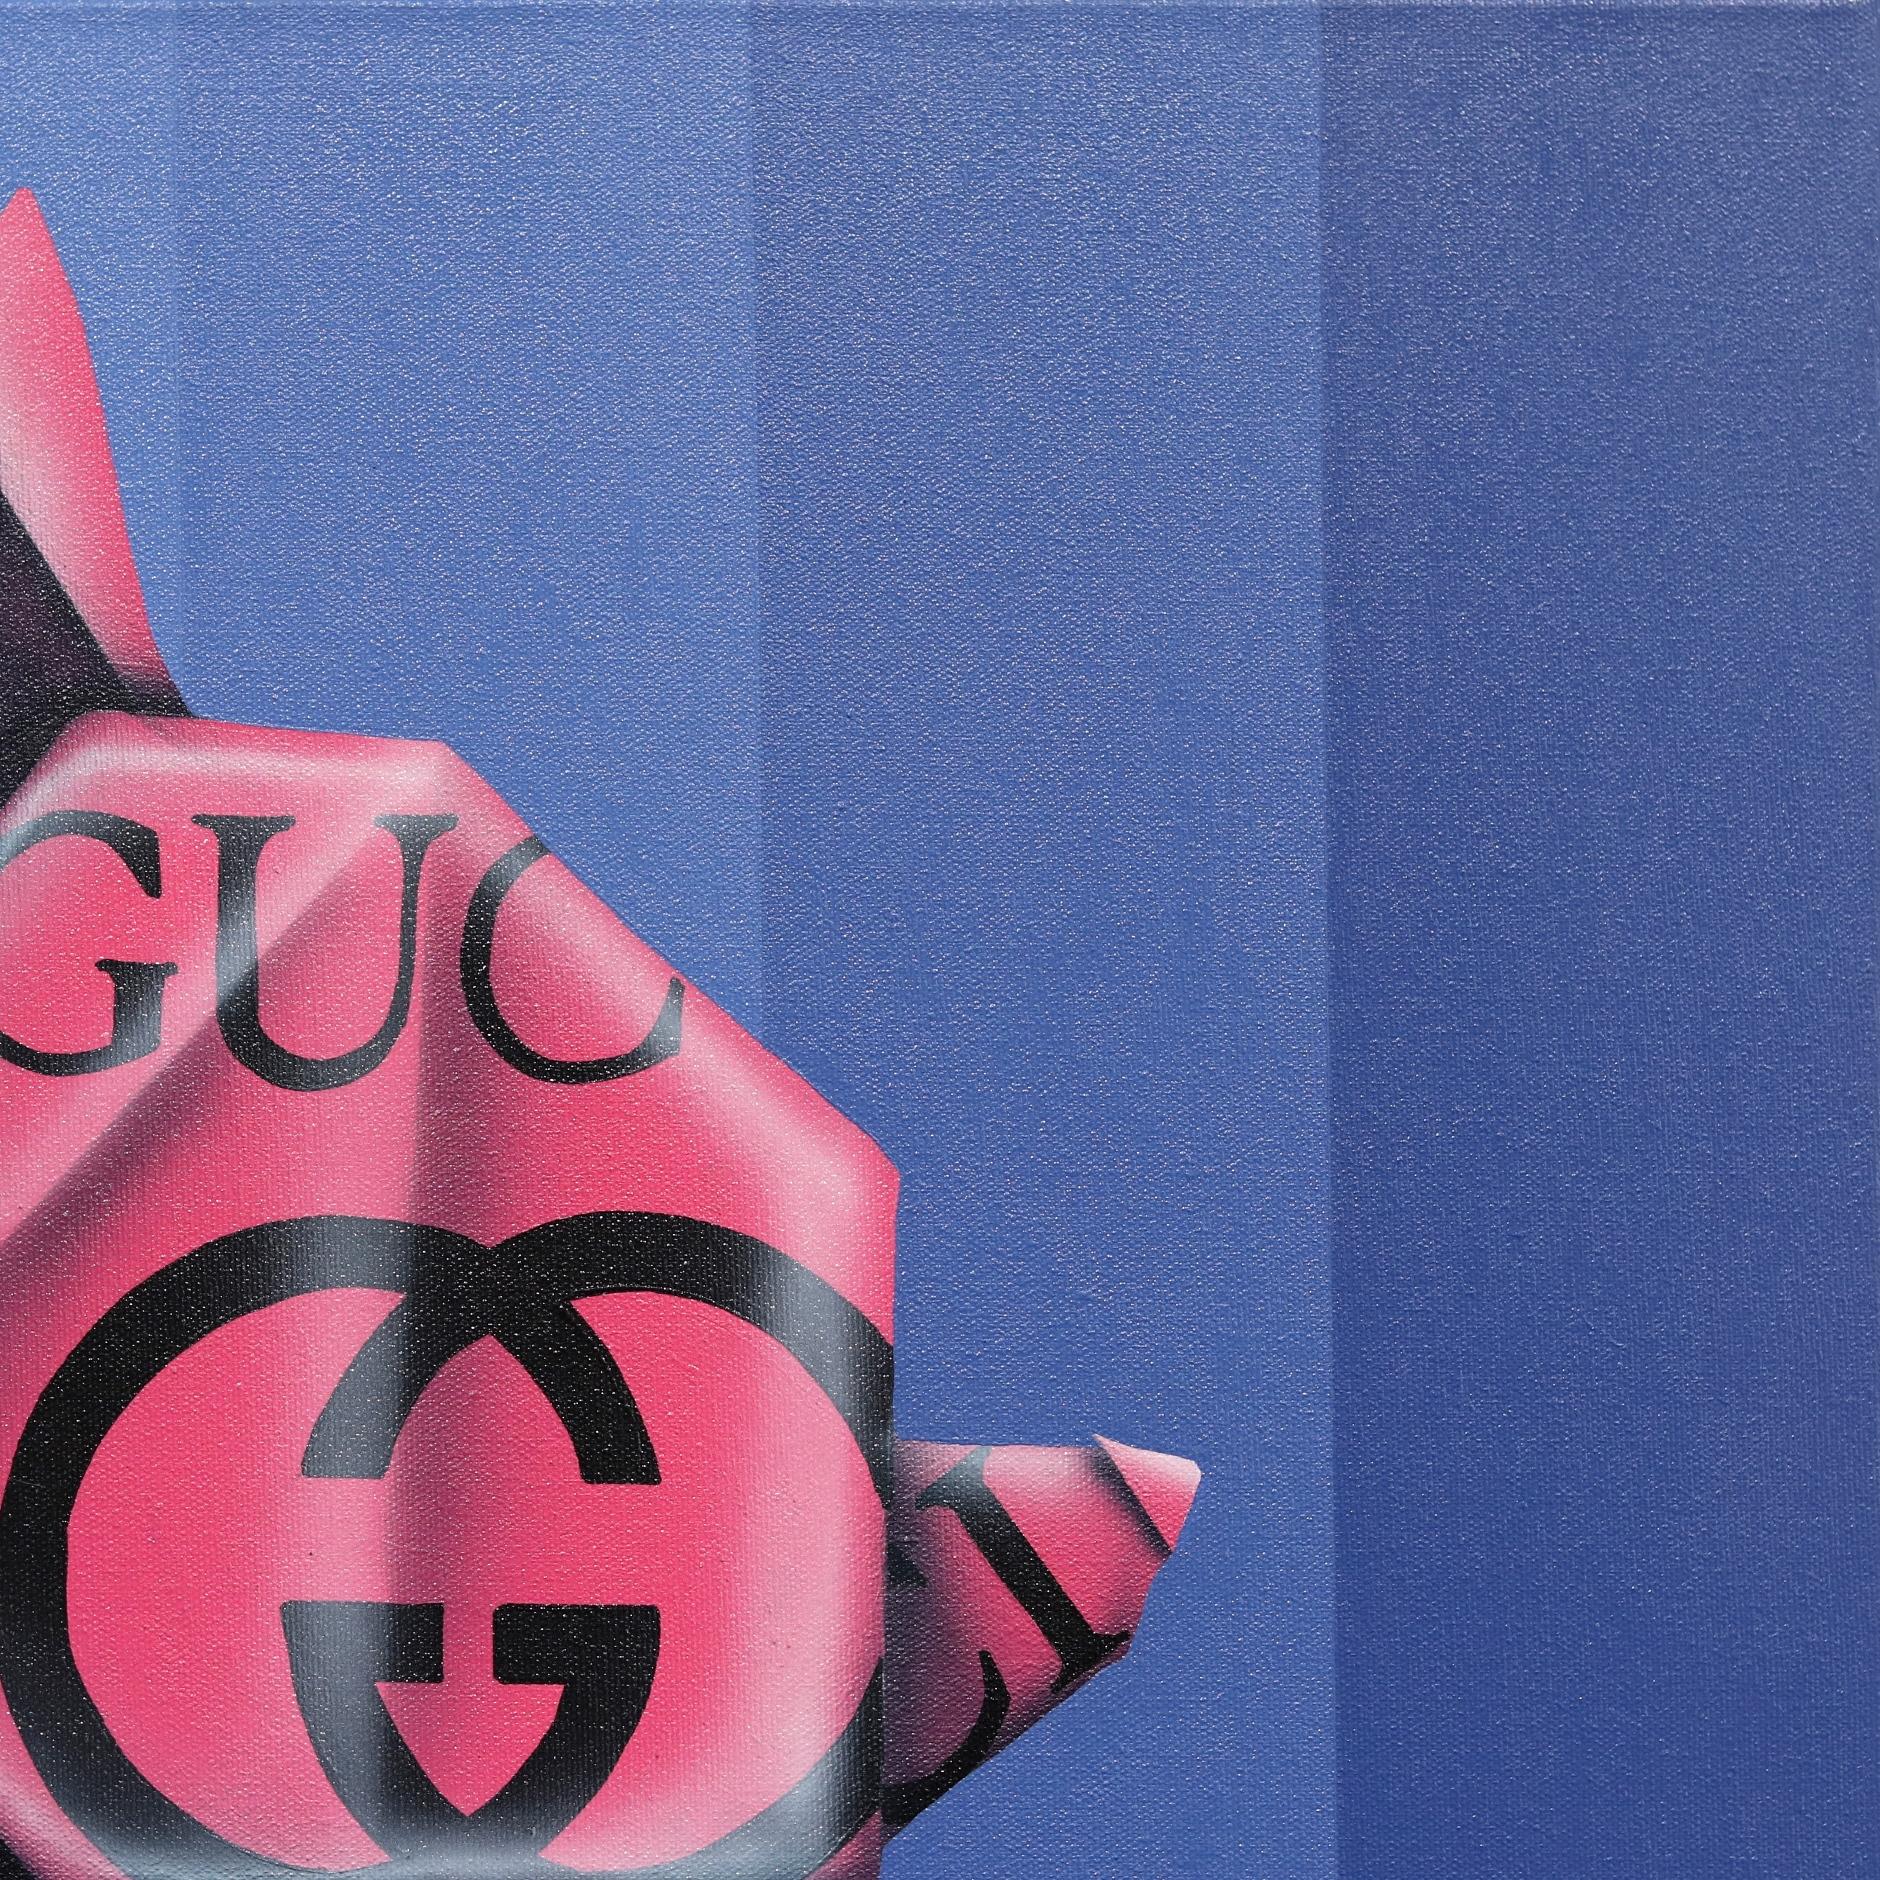 Emilio Ramas fesselnde, von der Pop Art inspirierte Gemälde mit Origami-Tierfiguren sind ein unverwechselbarer und origineller Beitrag zur zeitgenössischen Kunst. Mit einem lebendigen Zusammenspiel aus kräftigen Farben, Logos und Anspielungen auf